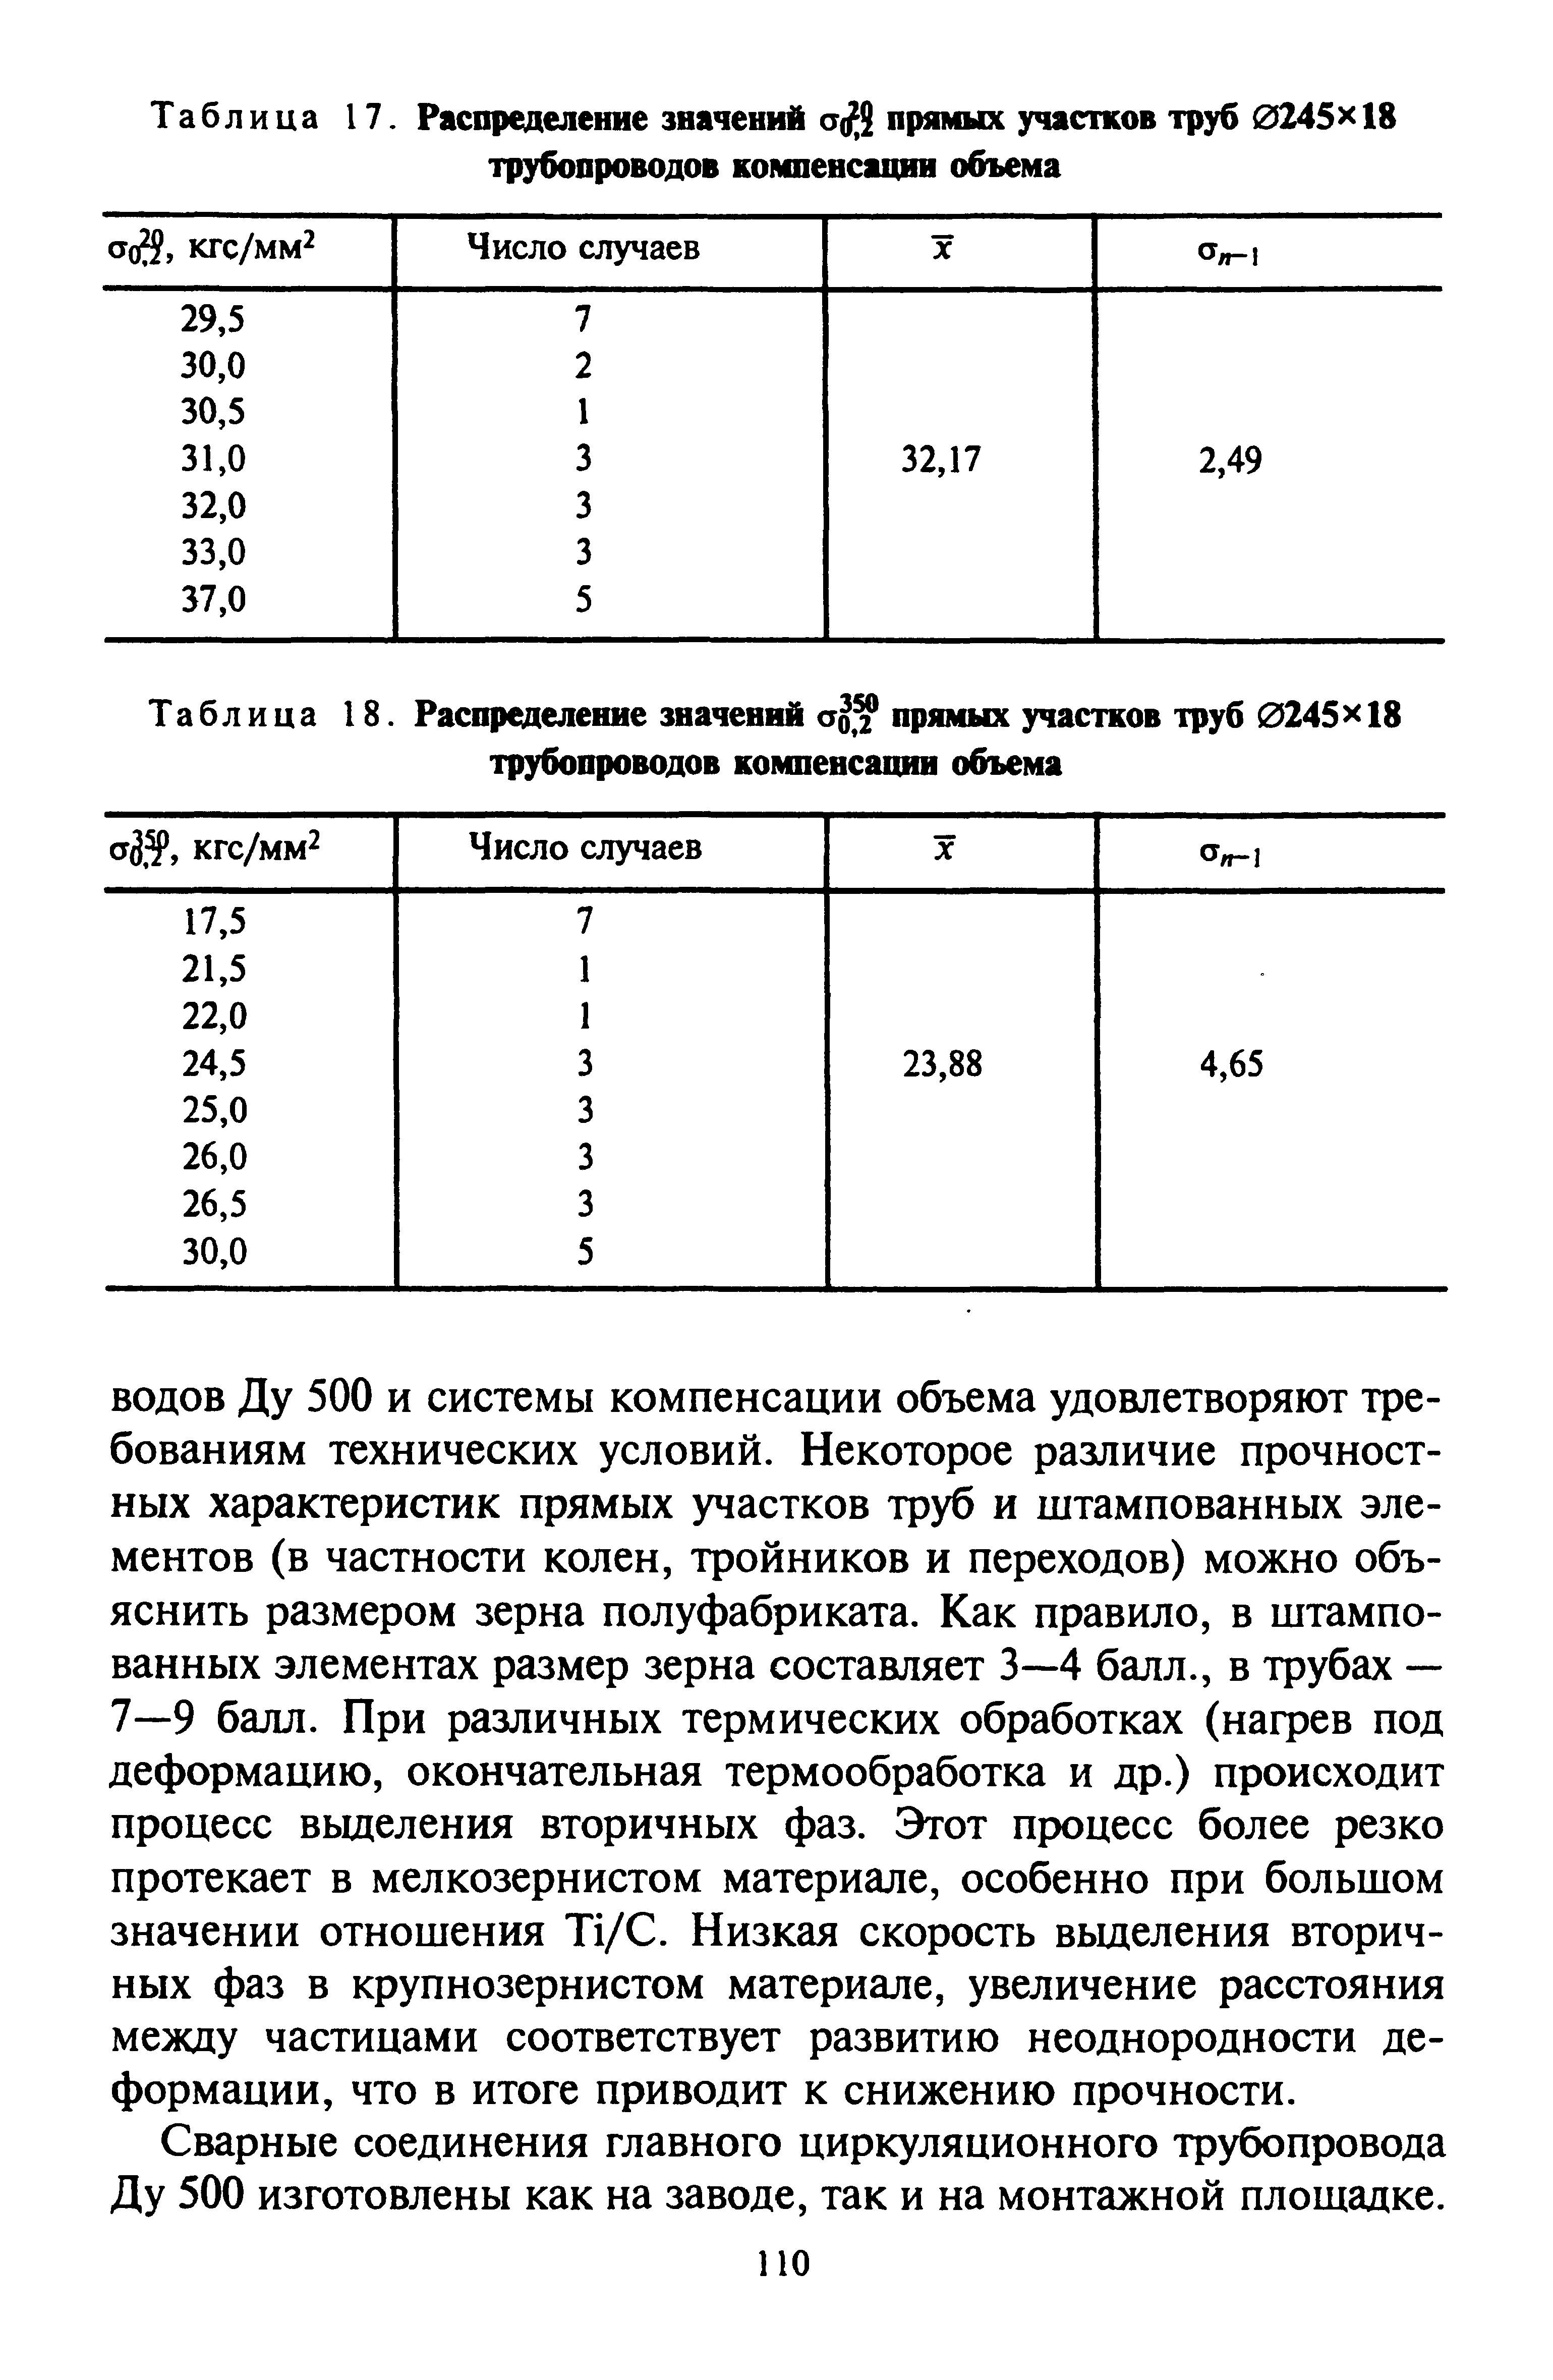 Таблица 18. Распределение значений прямых участков труб 0245>< 18 трубопроводов компенсации объема
